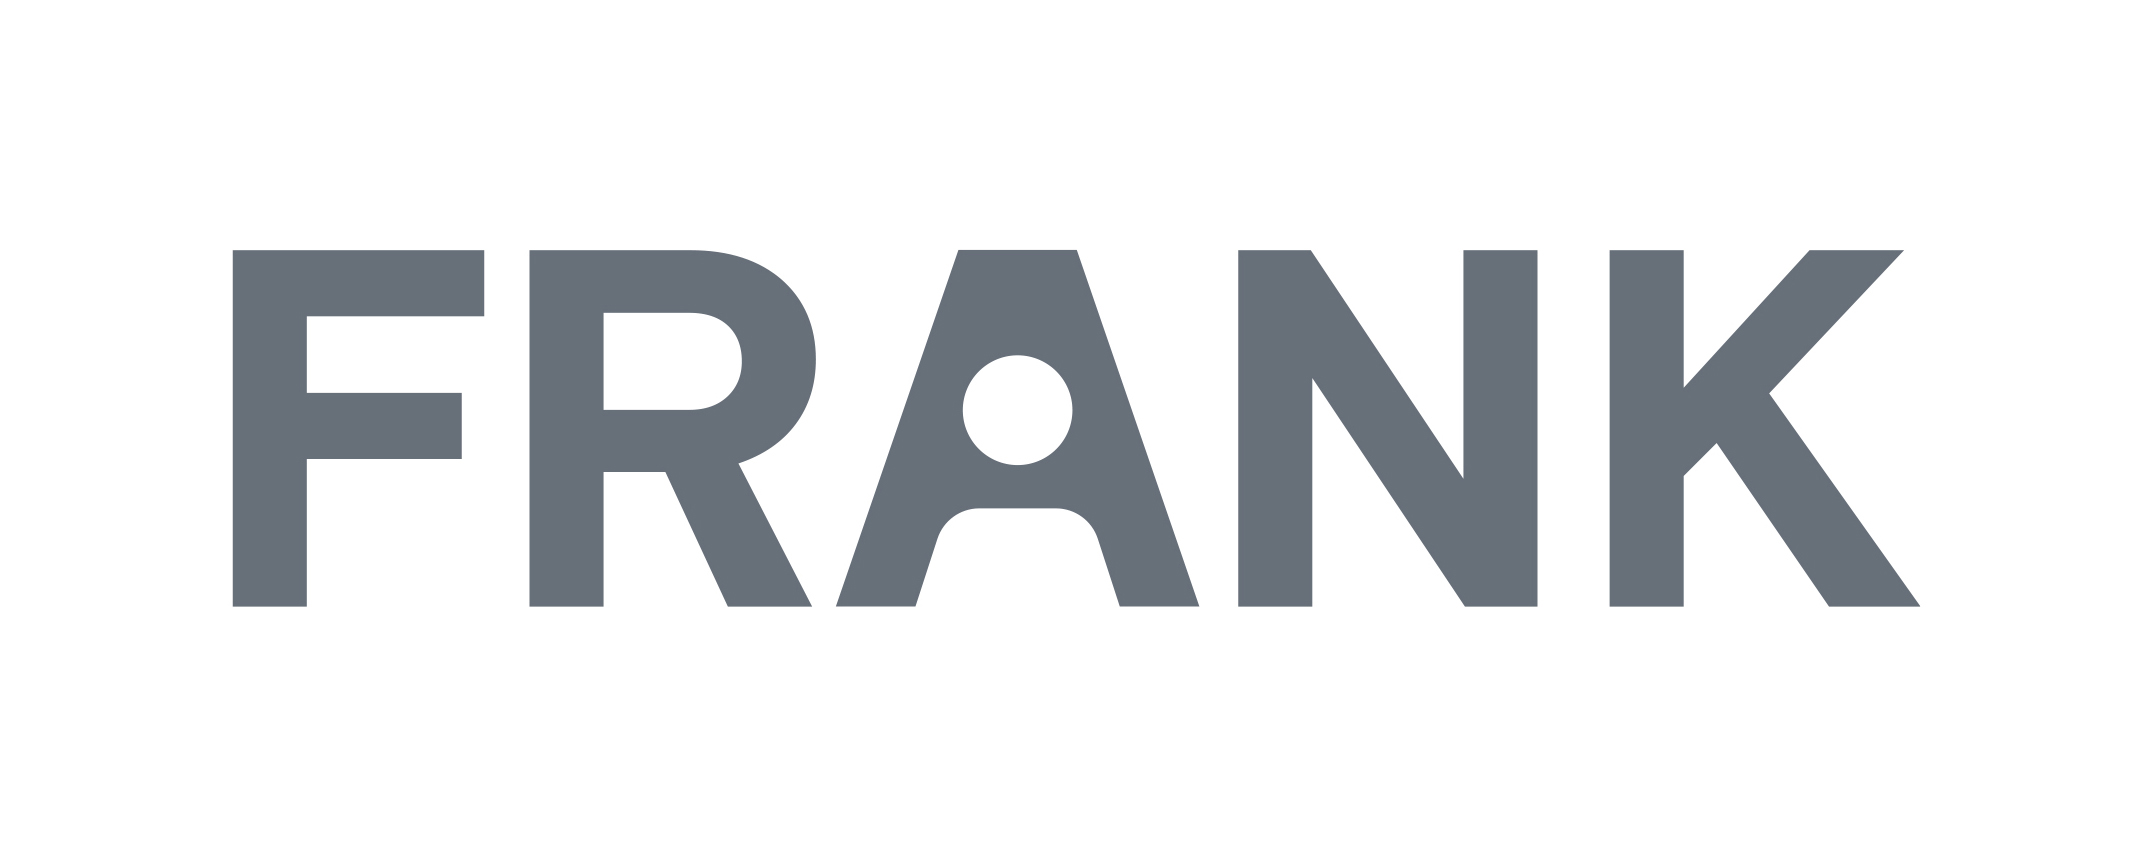 Logo der Baugenossenschaft "Frank". Ein Schriftzug in Grau, alle Buchstaben sind groß geschrieben.